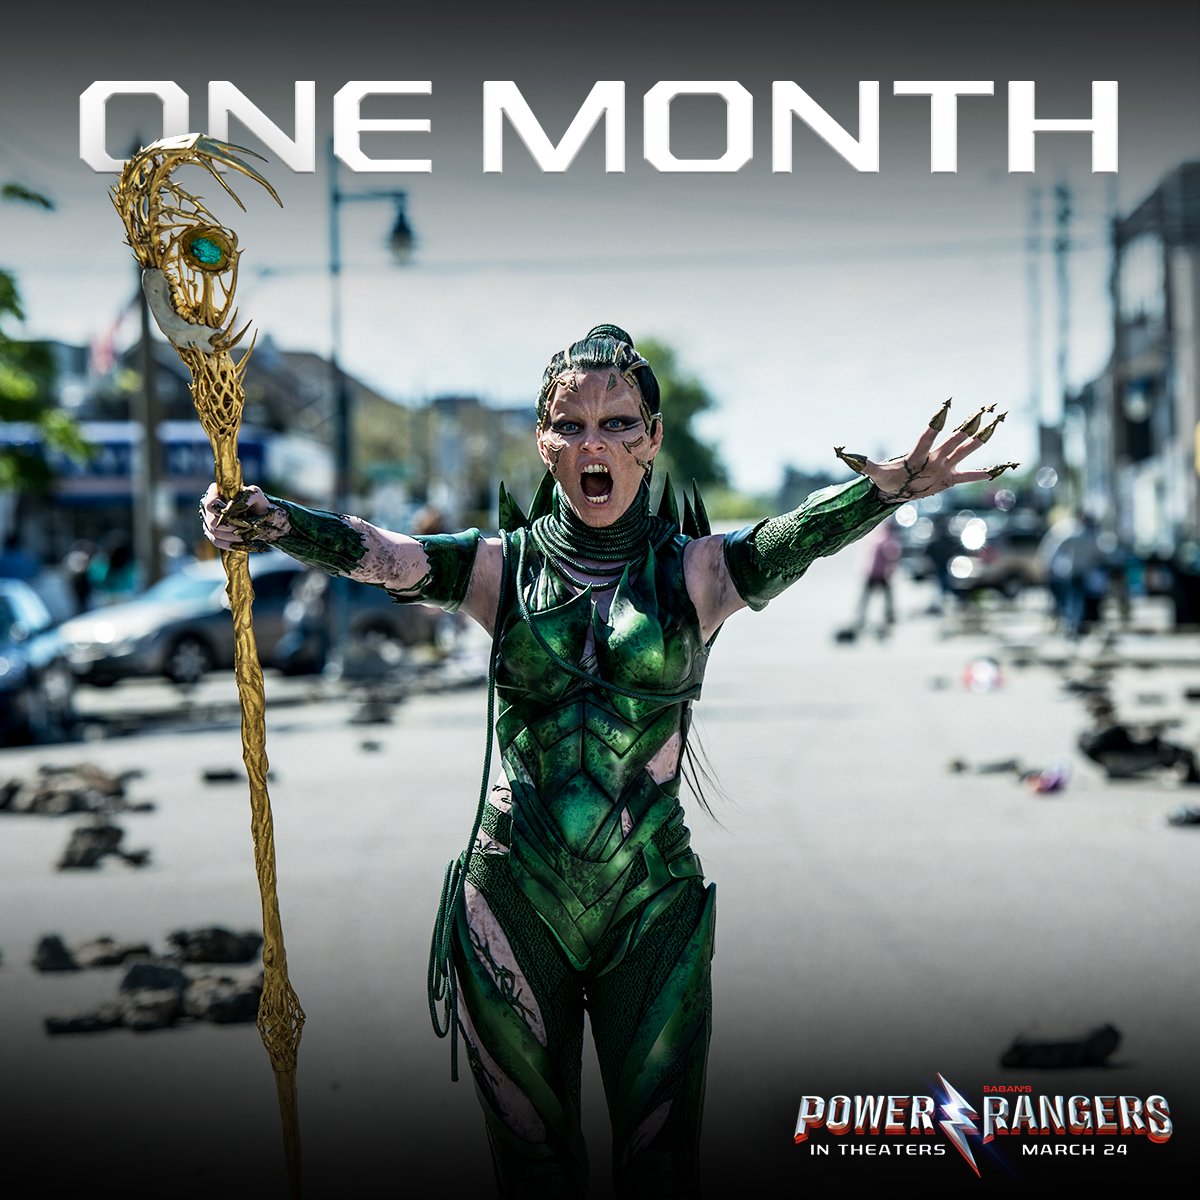 Get Ranger-ready with #RitaRepulsa. #PowerRangersMovie in one month! March 24 https://t.co/zyhJi21qPW